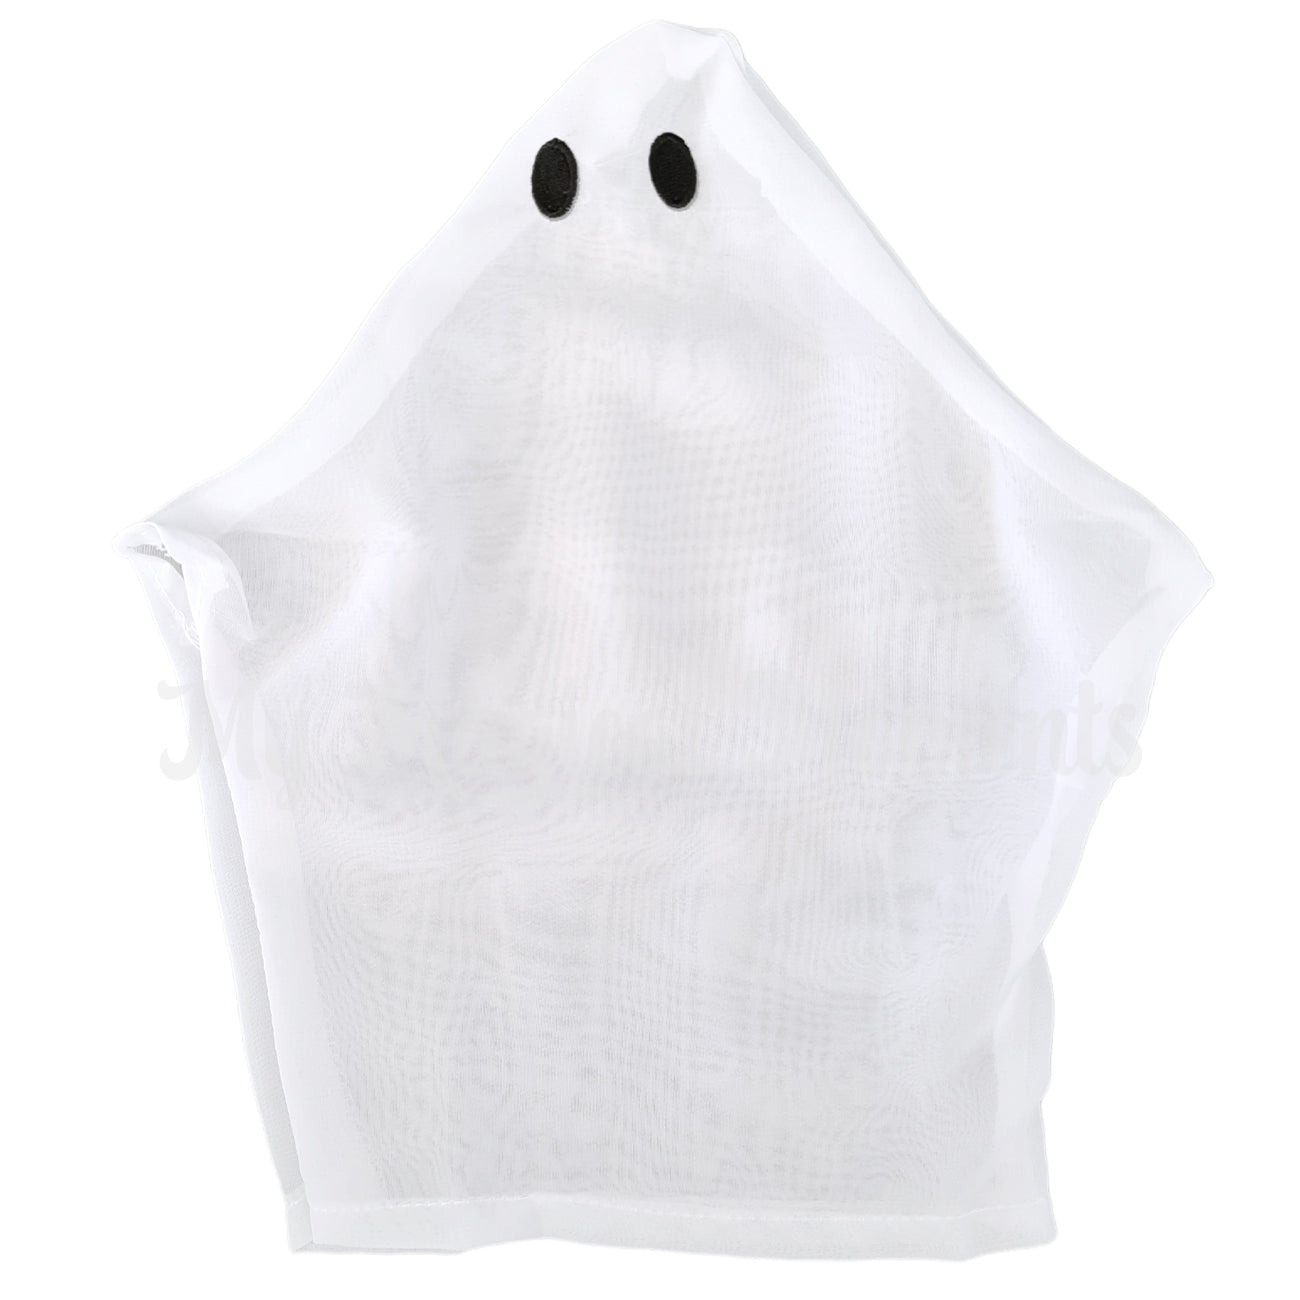 elf ghost costume